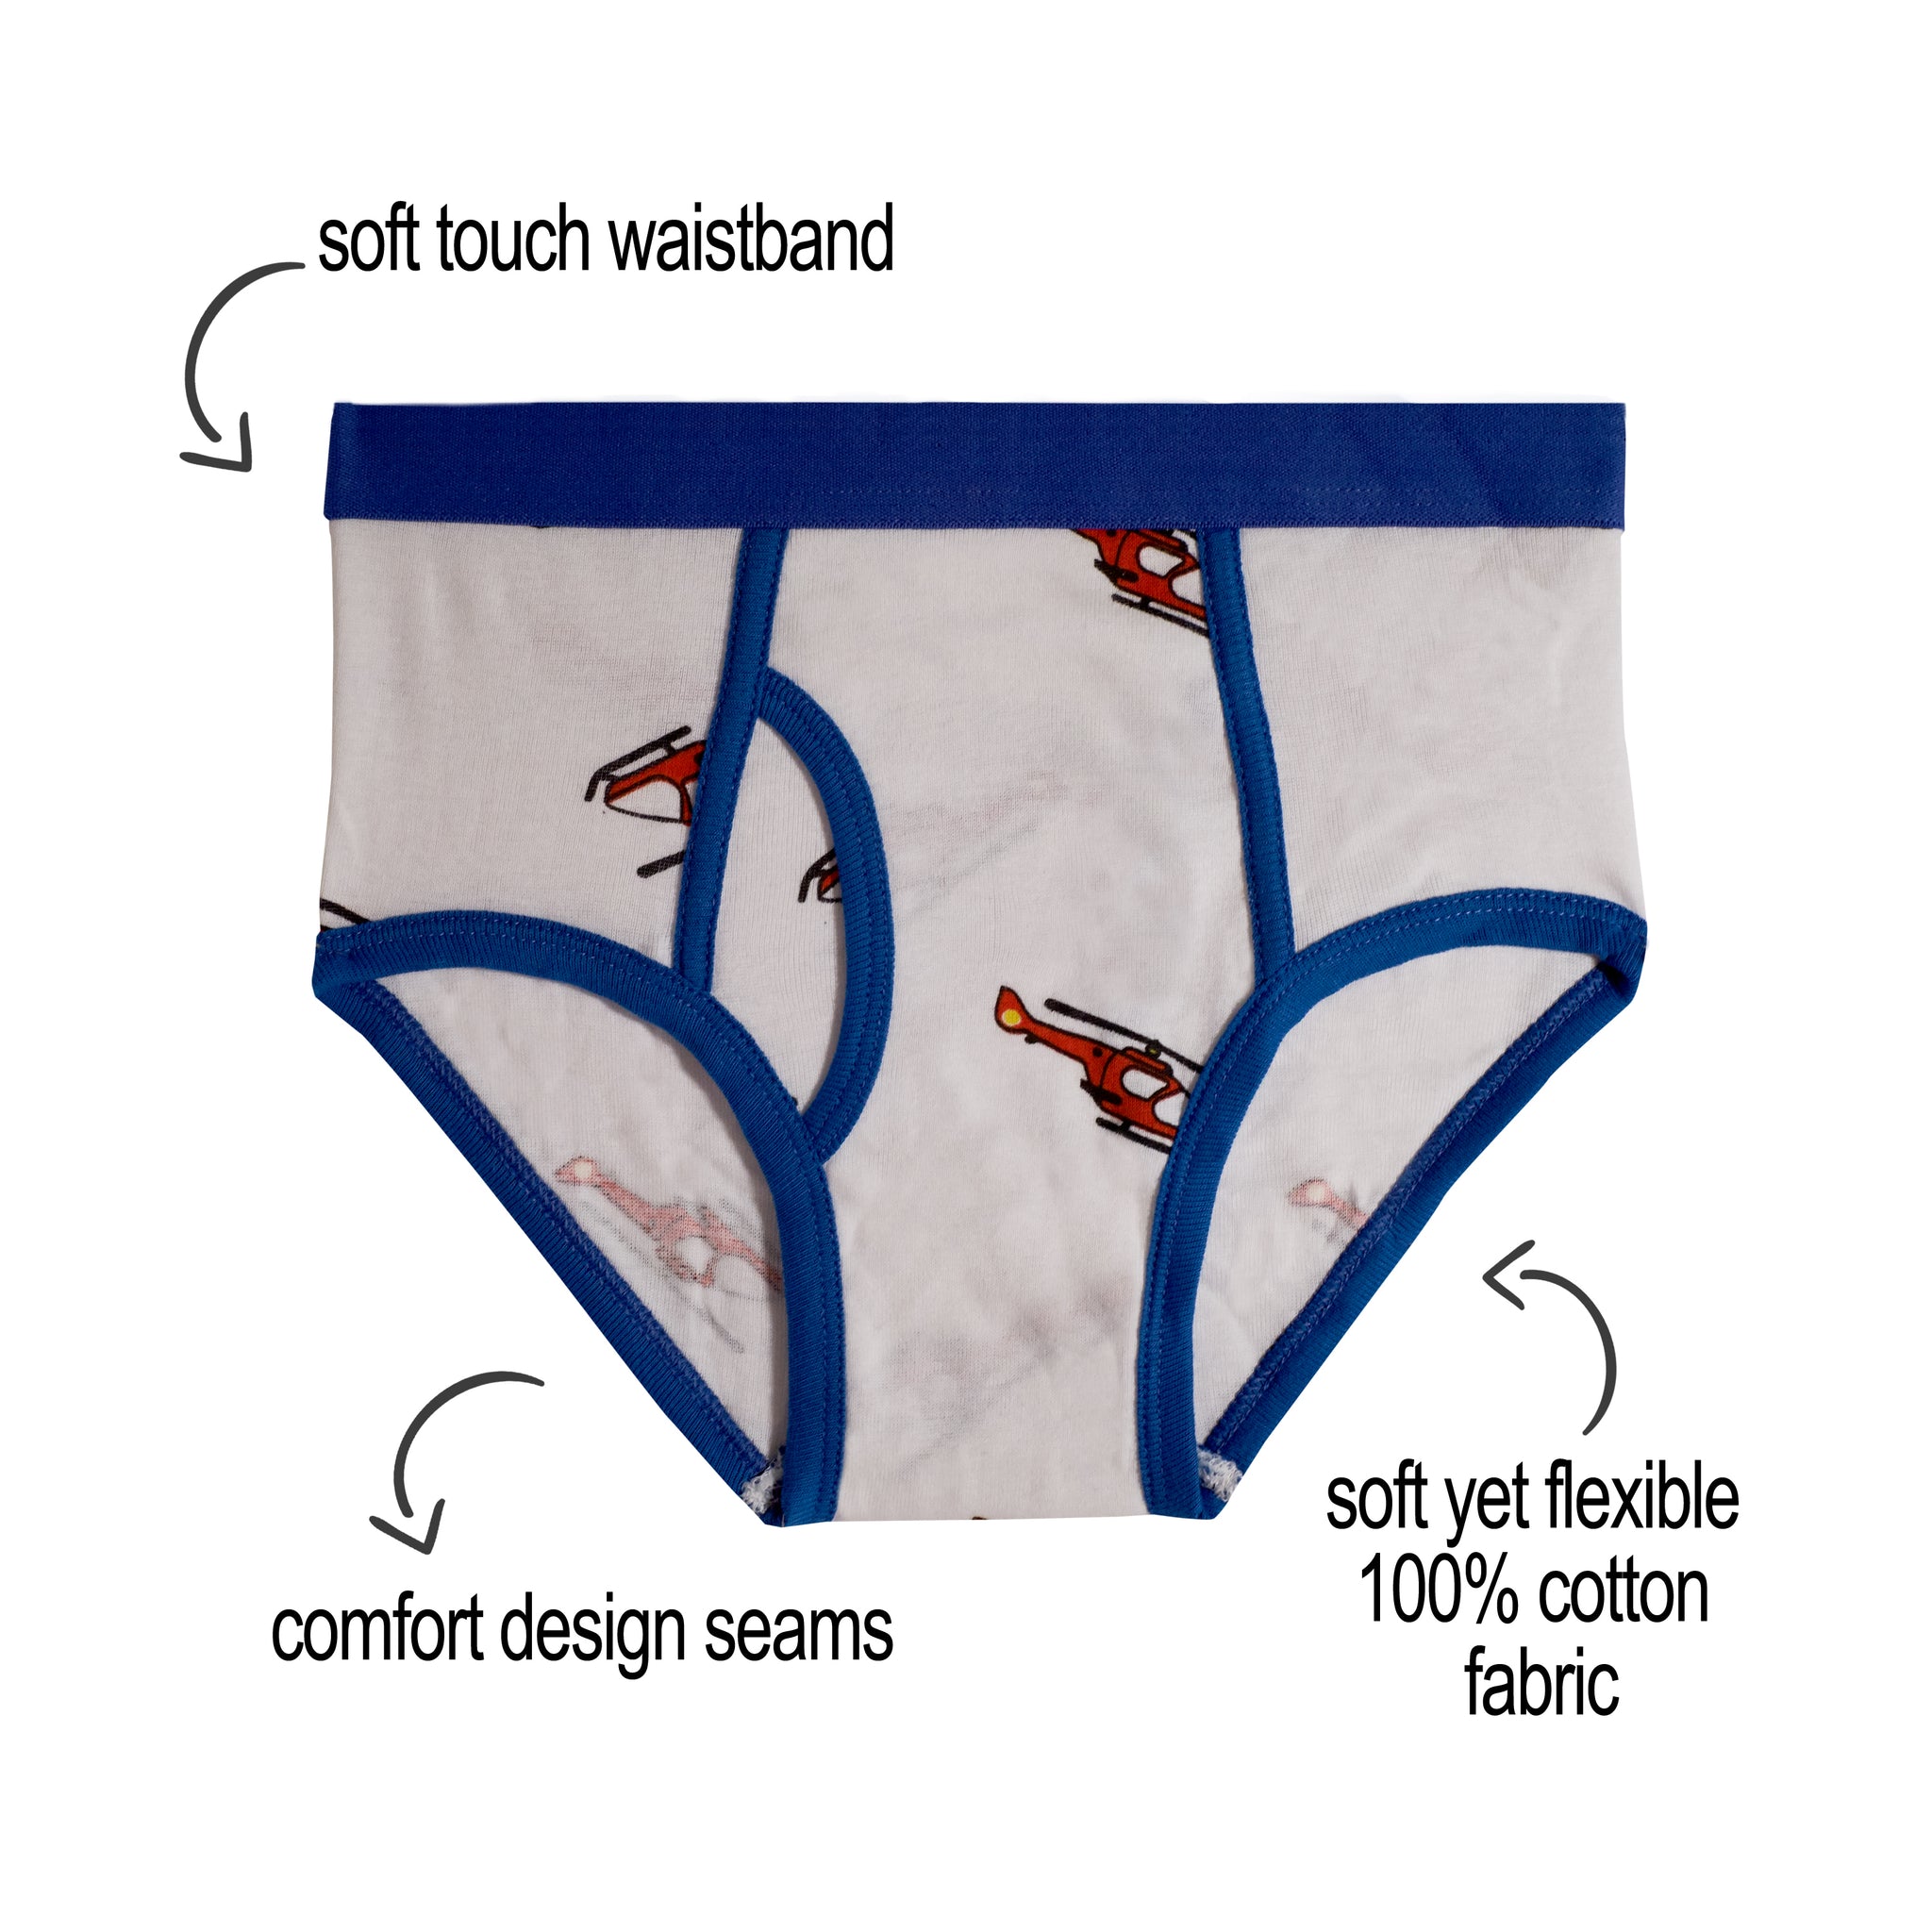 Mallary by Matthew 100% Cotton Boys Briefs Underwear 8 Pack